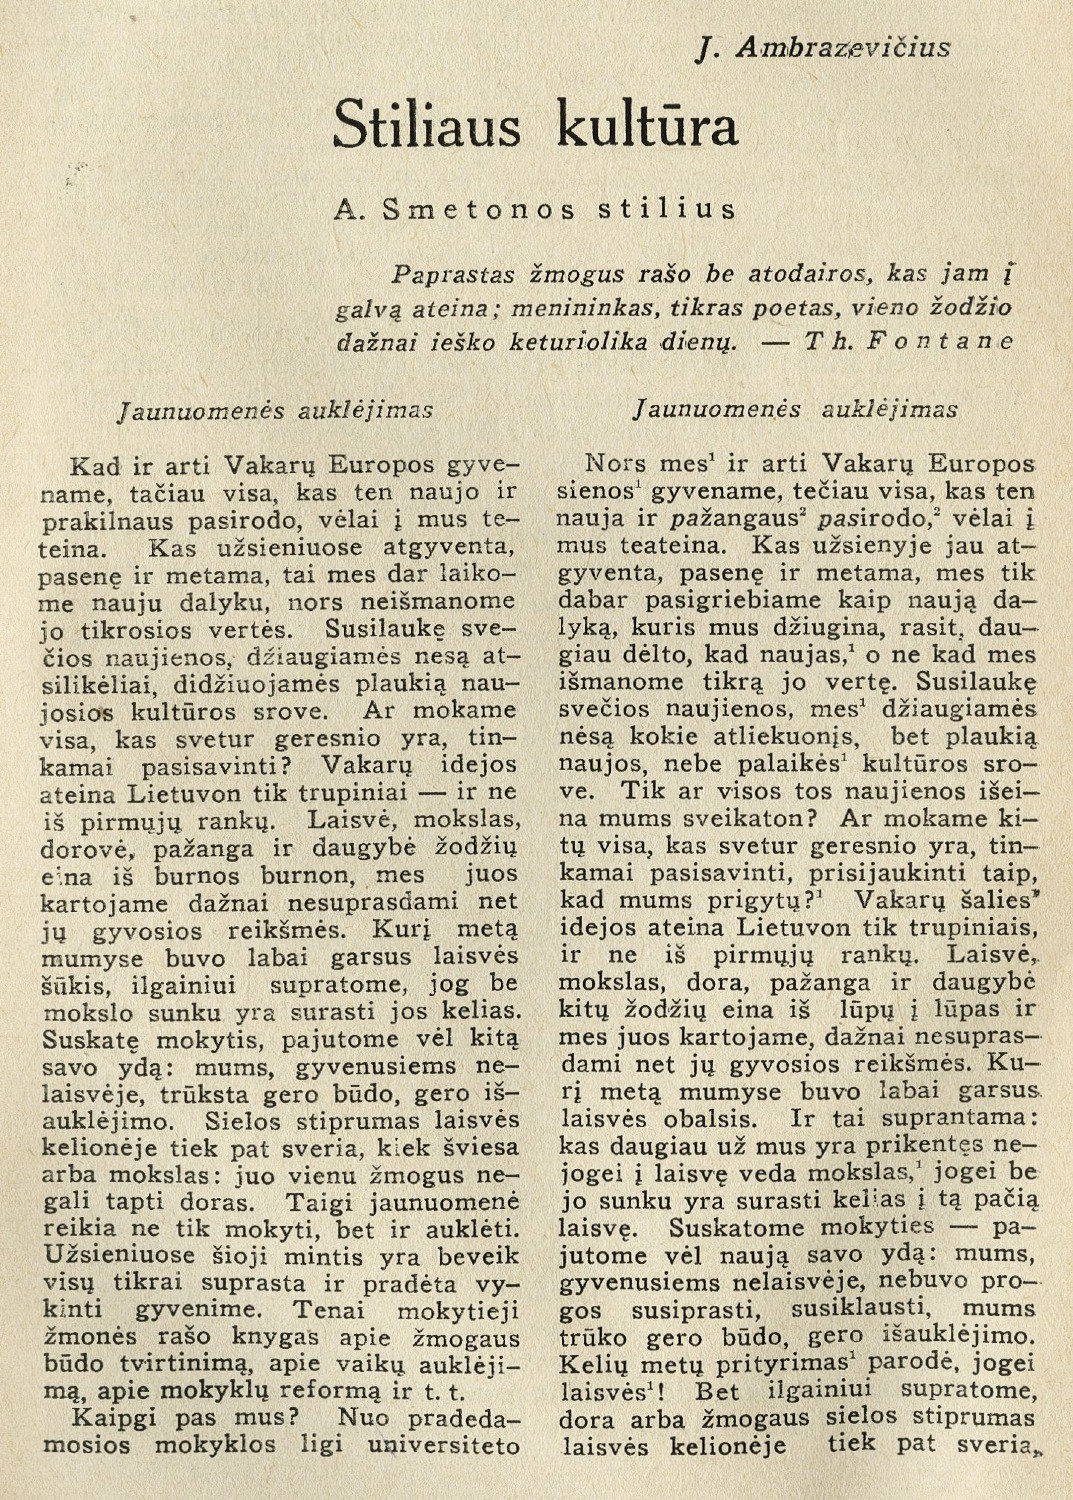 Stiliaus kultūra / J. Ambrazevičius // Židinys. – 1934, Nr. 8/9, p. 121–124.